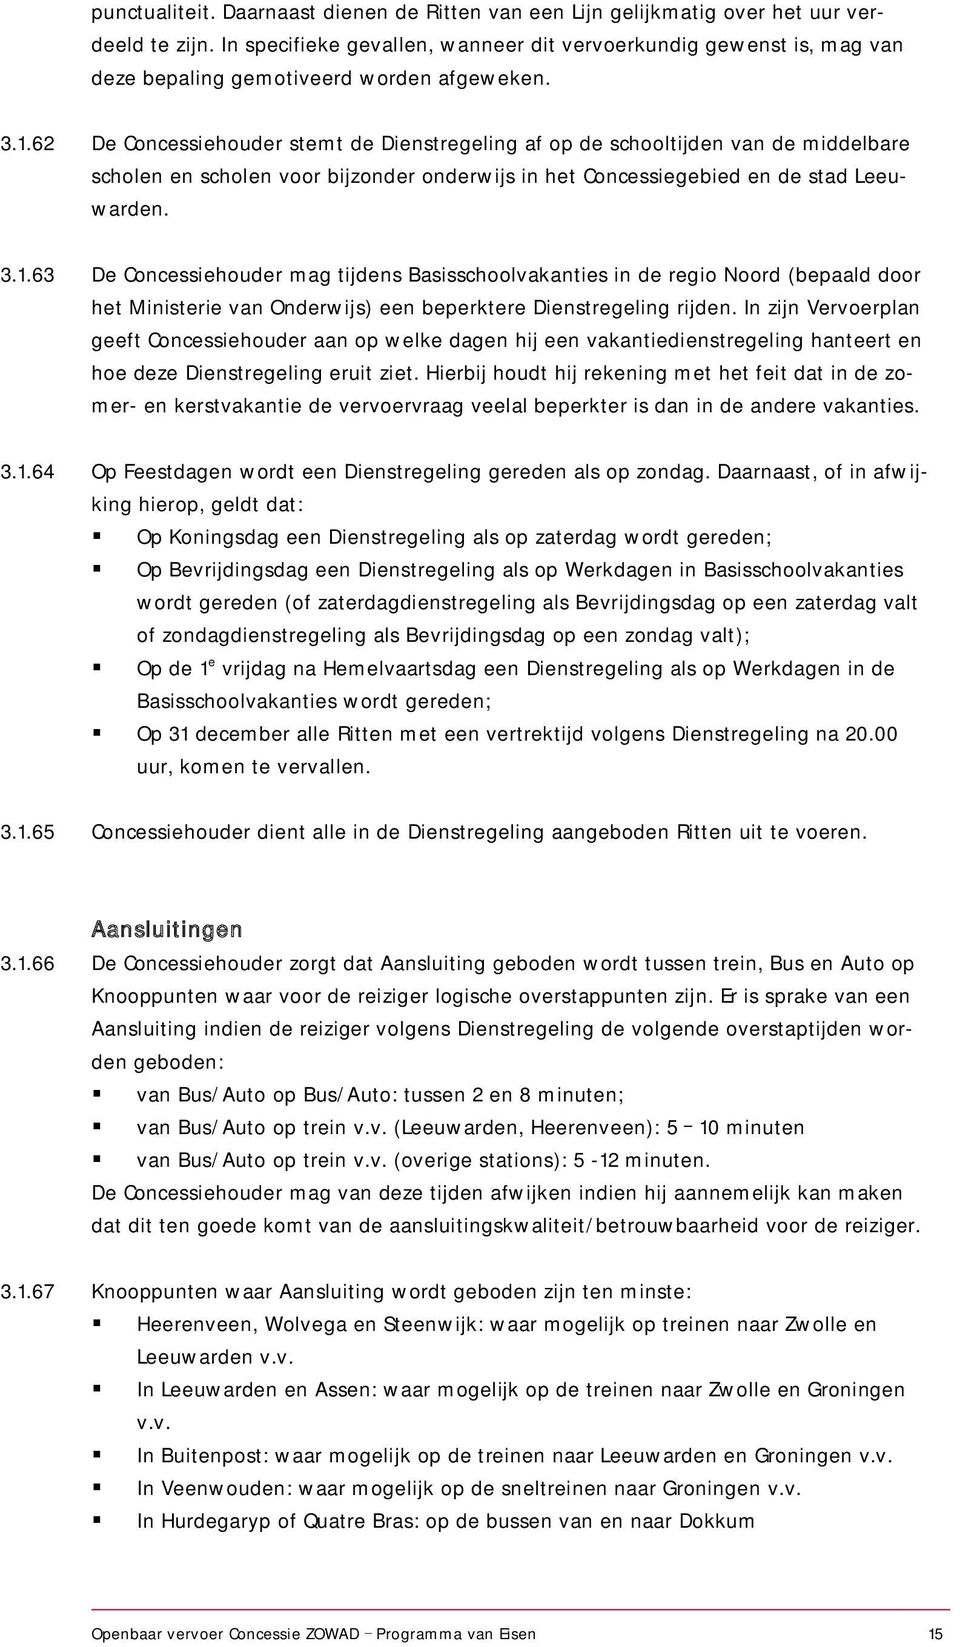 62 De Concessiehouder stemt de Dienstregeling af op de schooltijden van de middelbare scholen en scholen voor bijzonder onderwijs in het Concessiegebied en de stad Leeuwarden. 3.1.